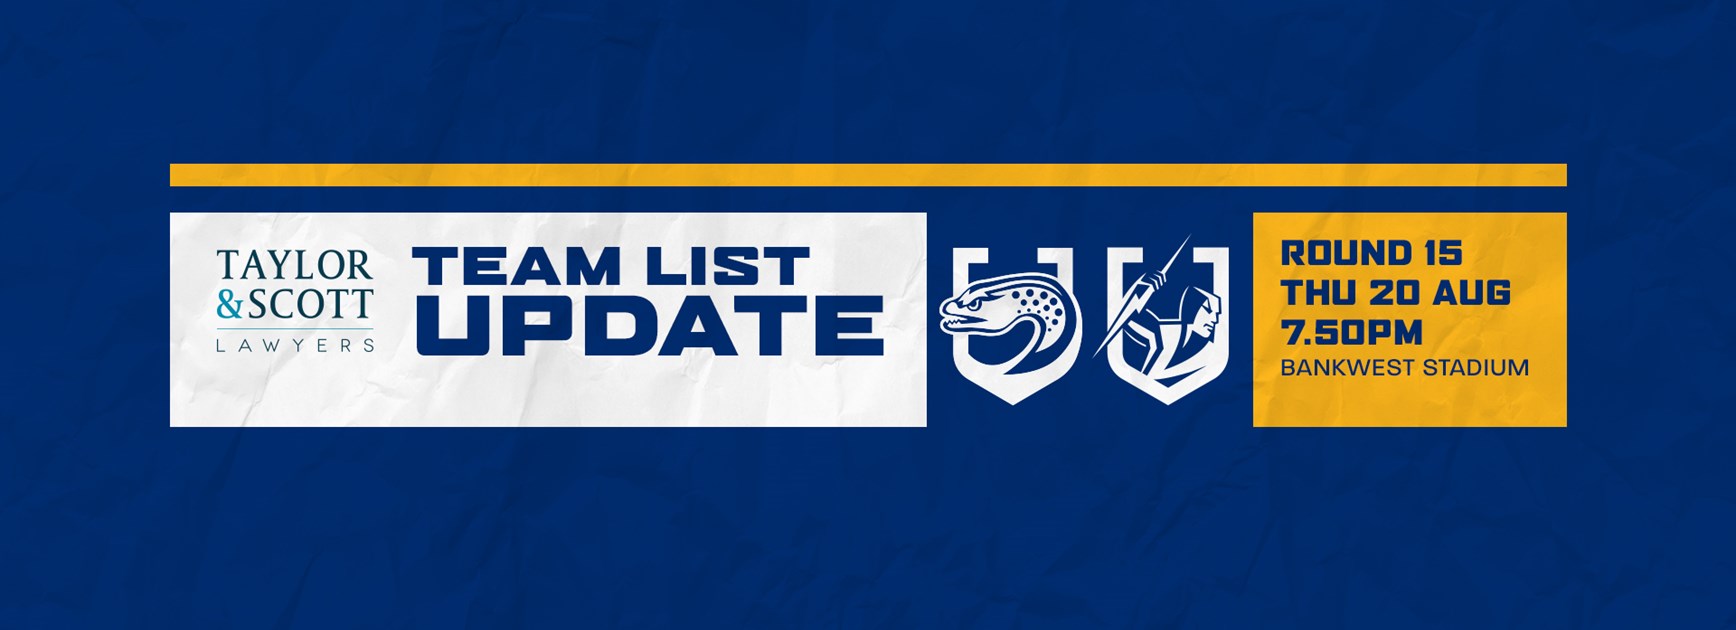 Team List Update: Eels v Storm, Round 15